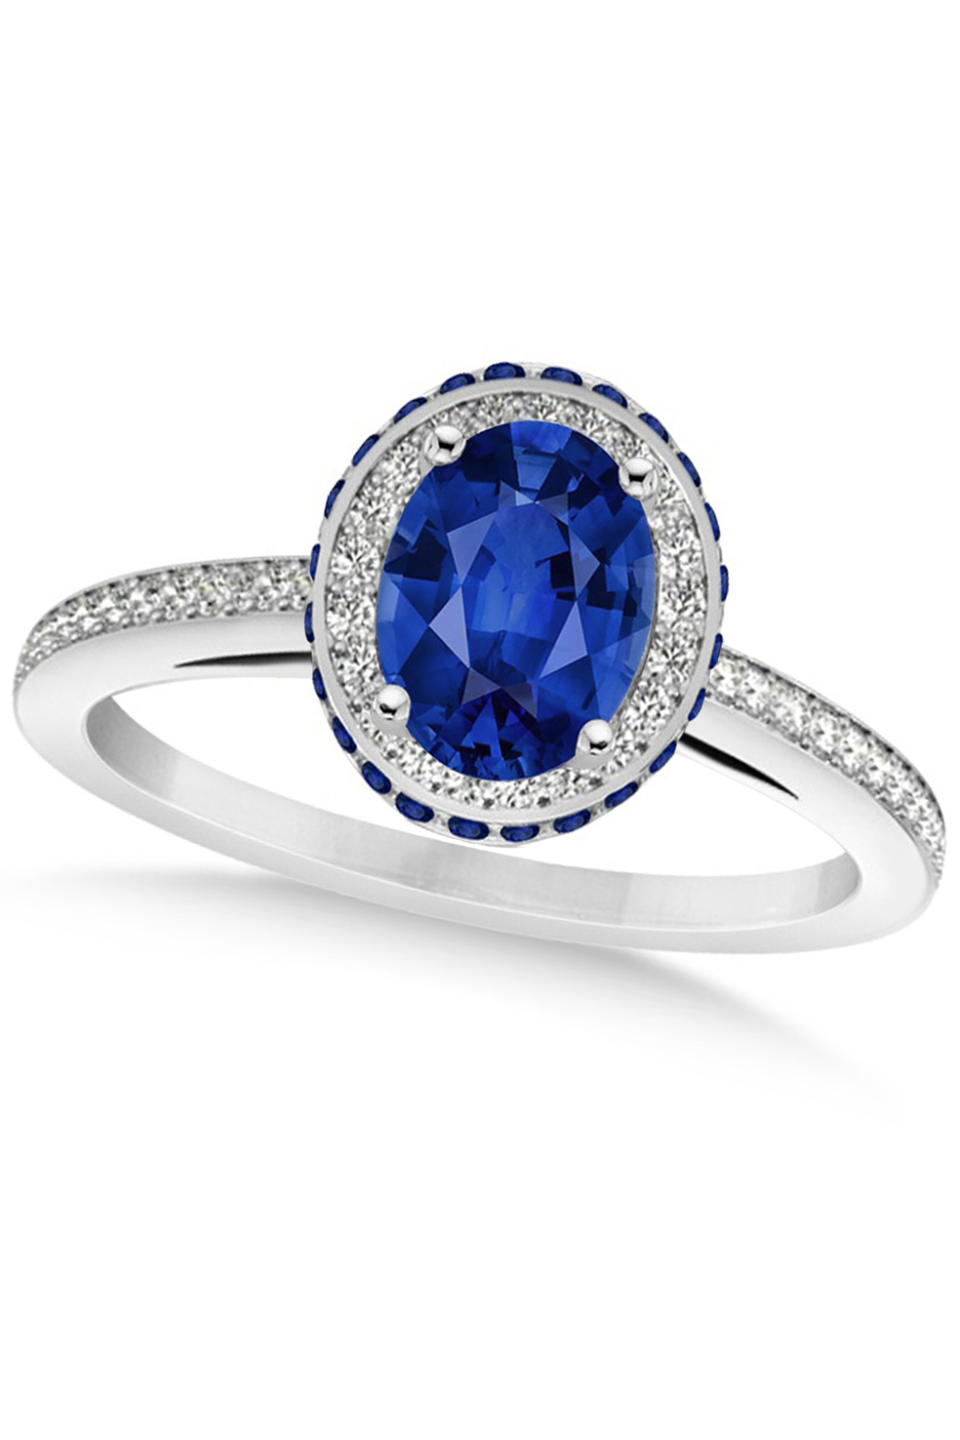 <p><em><a rel="nofollow noopener" href="https://www.allurez.com/rings/engagement-rings/oval-blue-sapphire-diamond-halo-engagement-ring-14k-white-gold-2.00ct/pid/41063/65" target="_blank" data-ylk="slk:Oval Blue Sapphire Diamond Halo Engagement Ring;elm:context_link;itc:0;sec:content-canvas" class="link ">Oval Blue Sapphire Diamond Halo Engagement Ring</a>, ALLUREZ, $3,950</em><br></p>